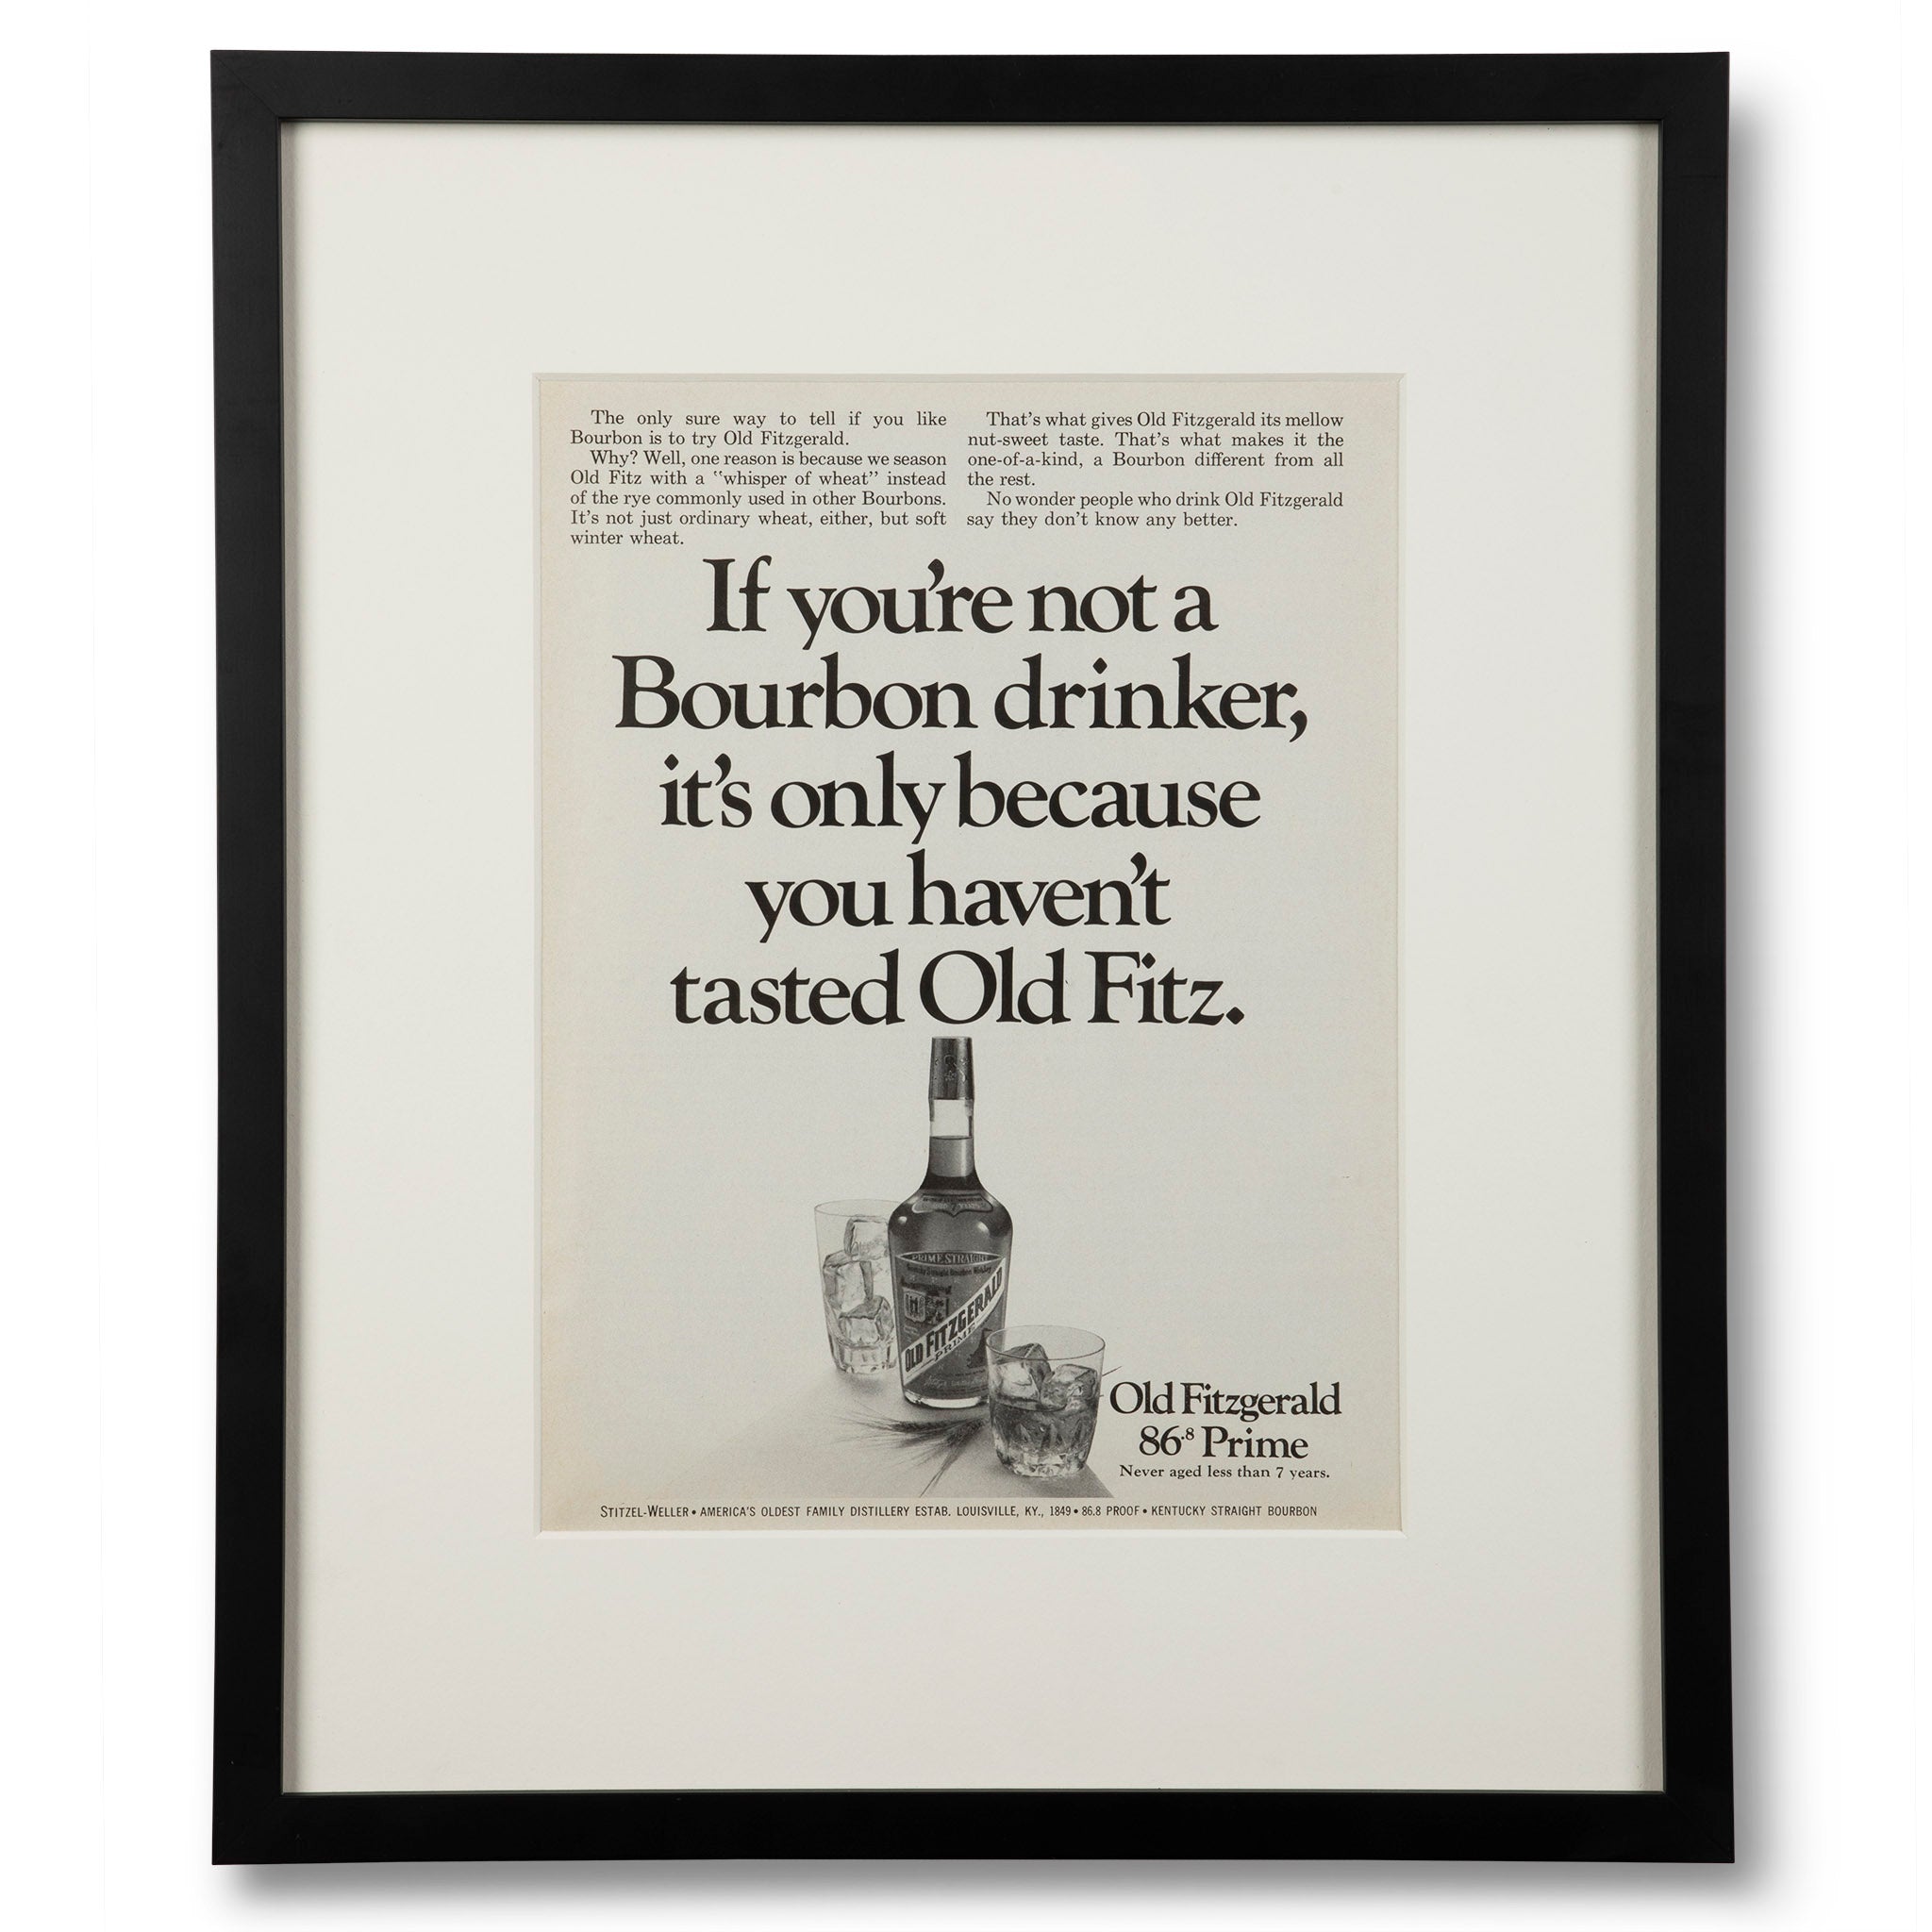 Framed Old Fitz Bourbon Drinker Advertisement